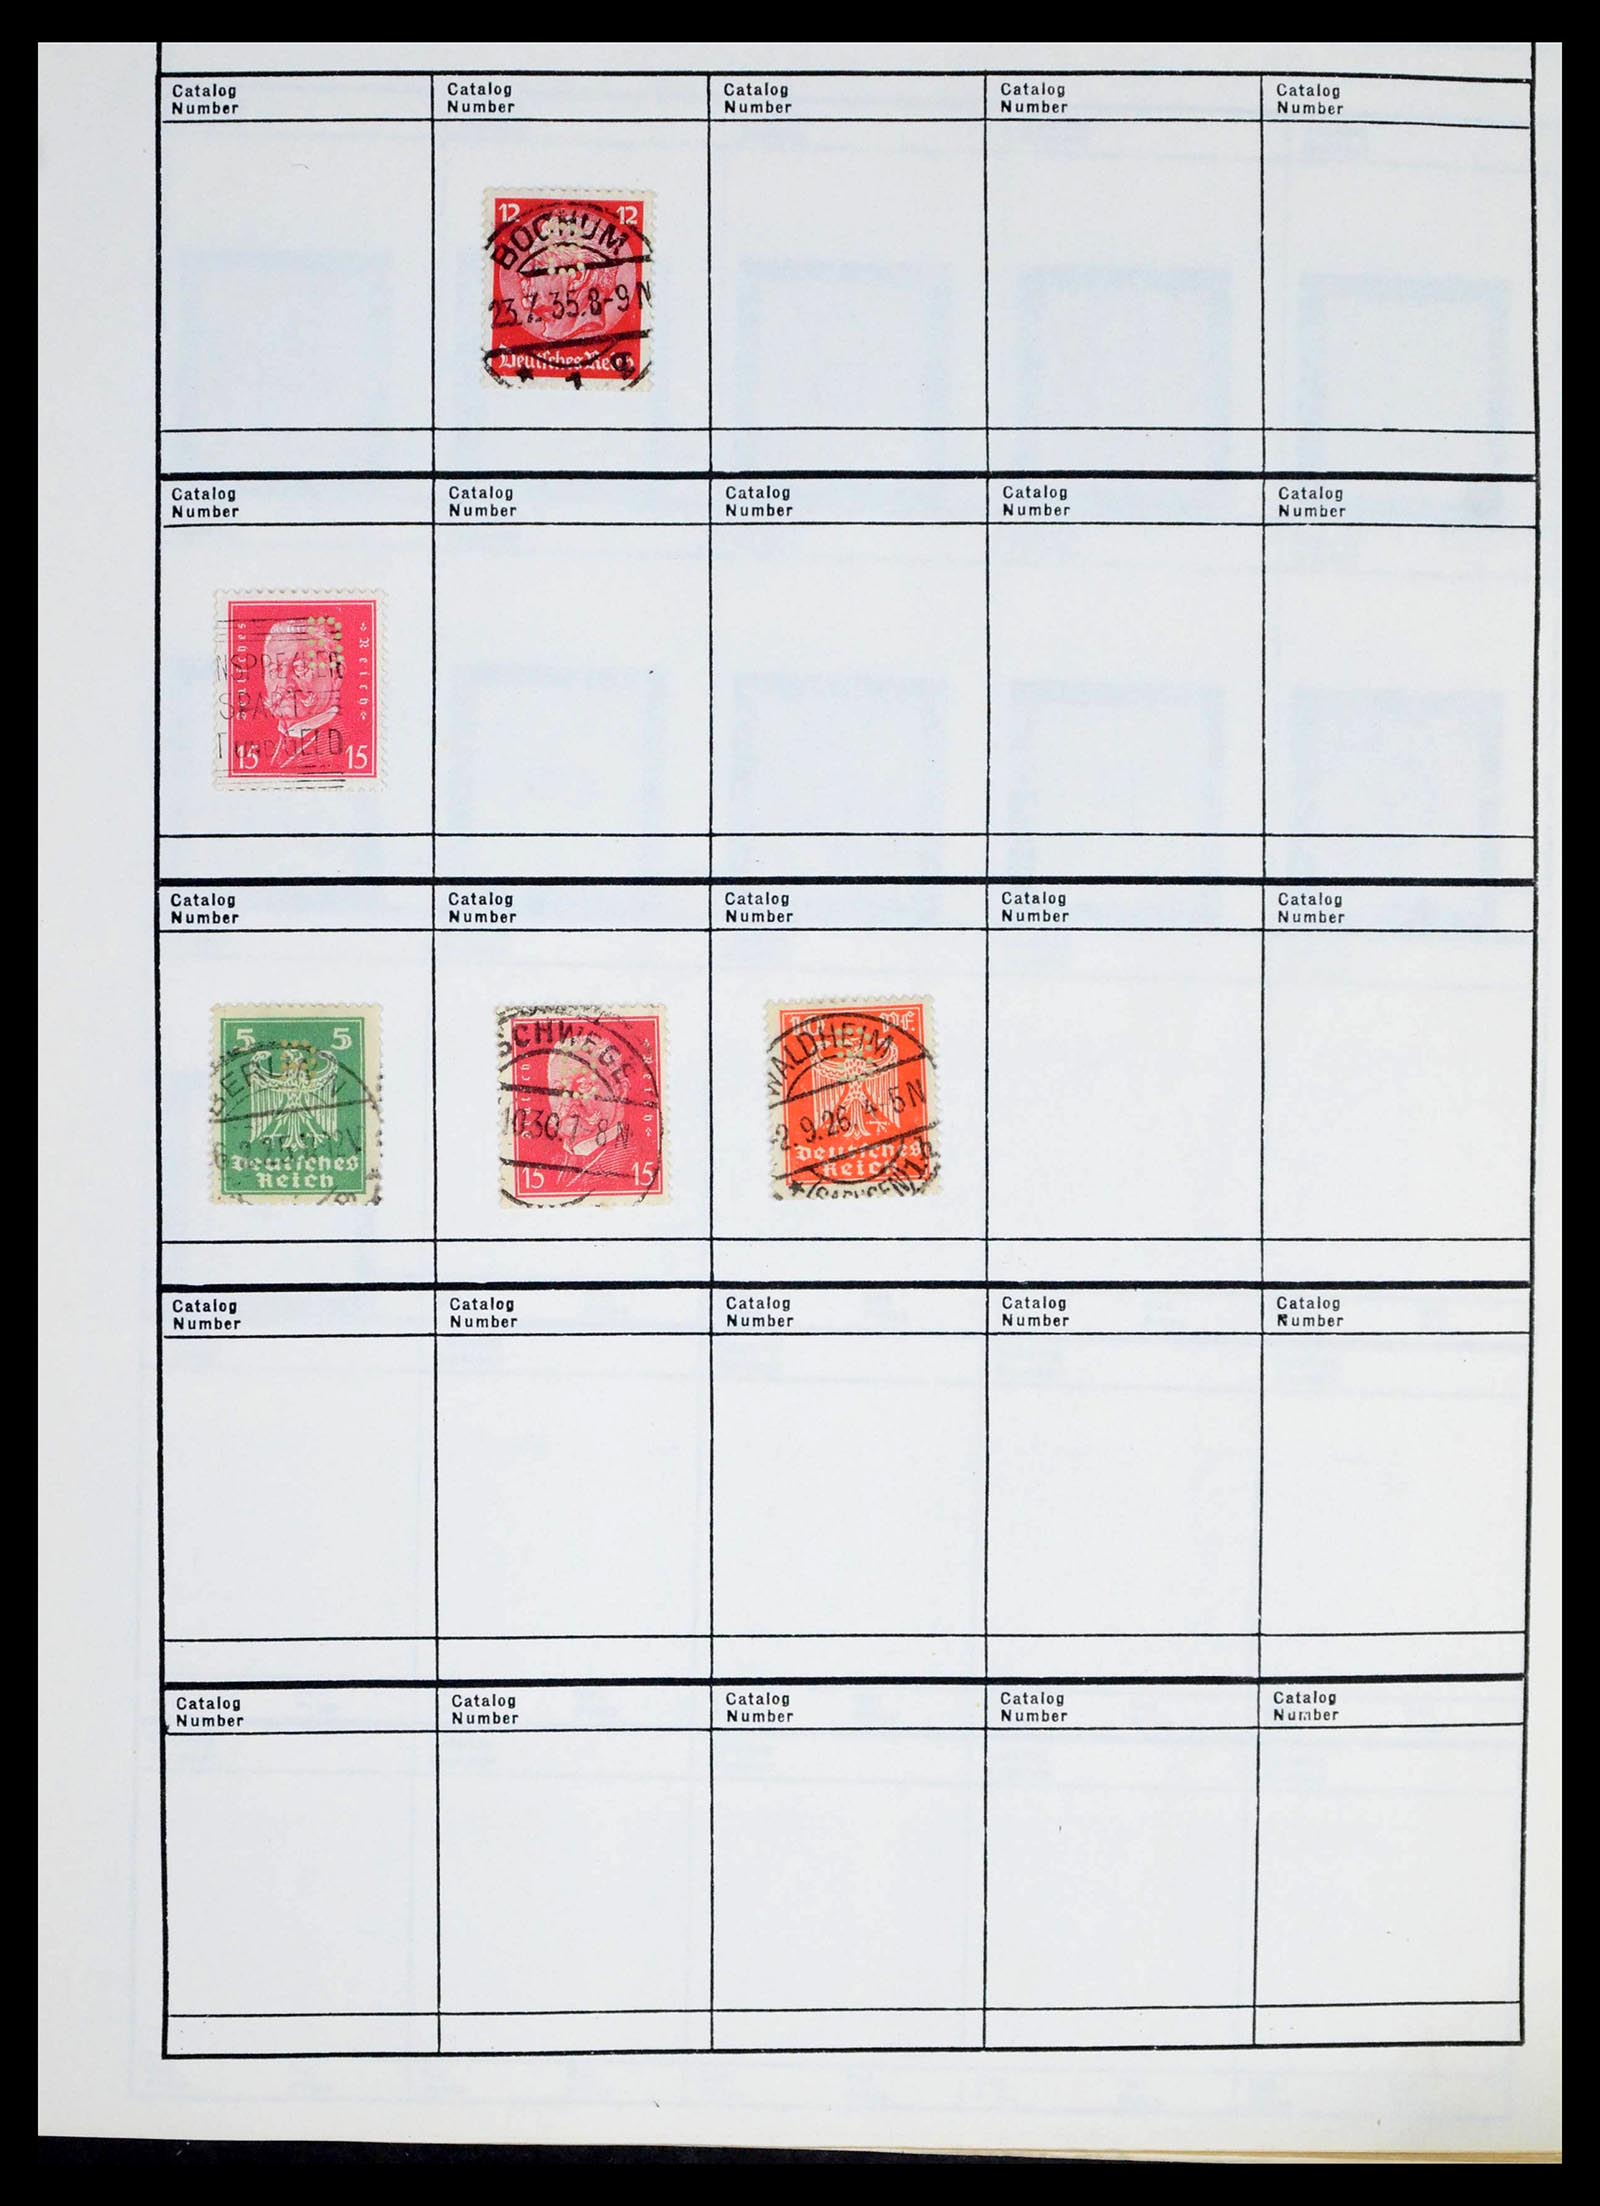 39480 0051 - Stamp collection 39480 German Reich perfins 1880-1955.